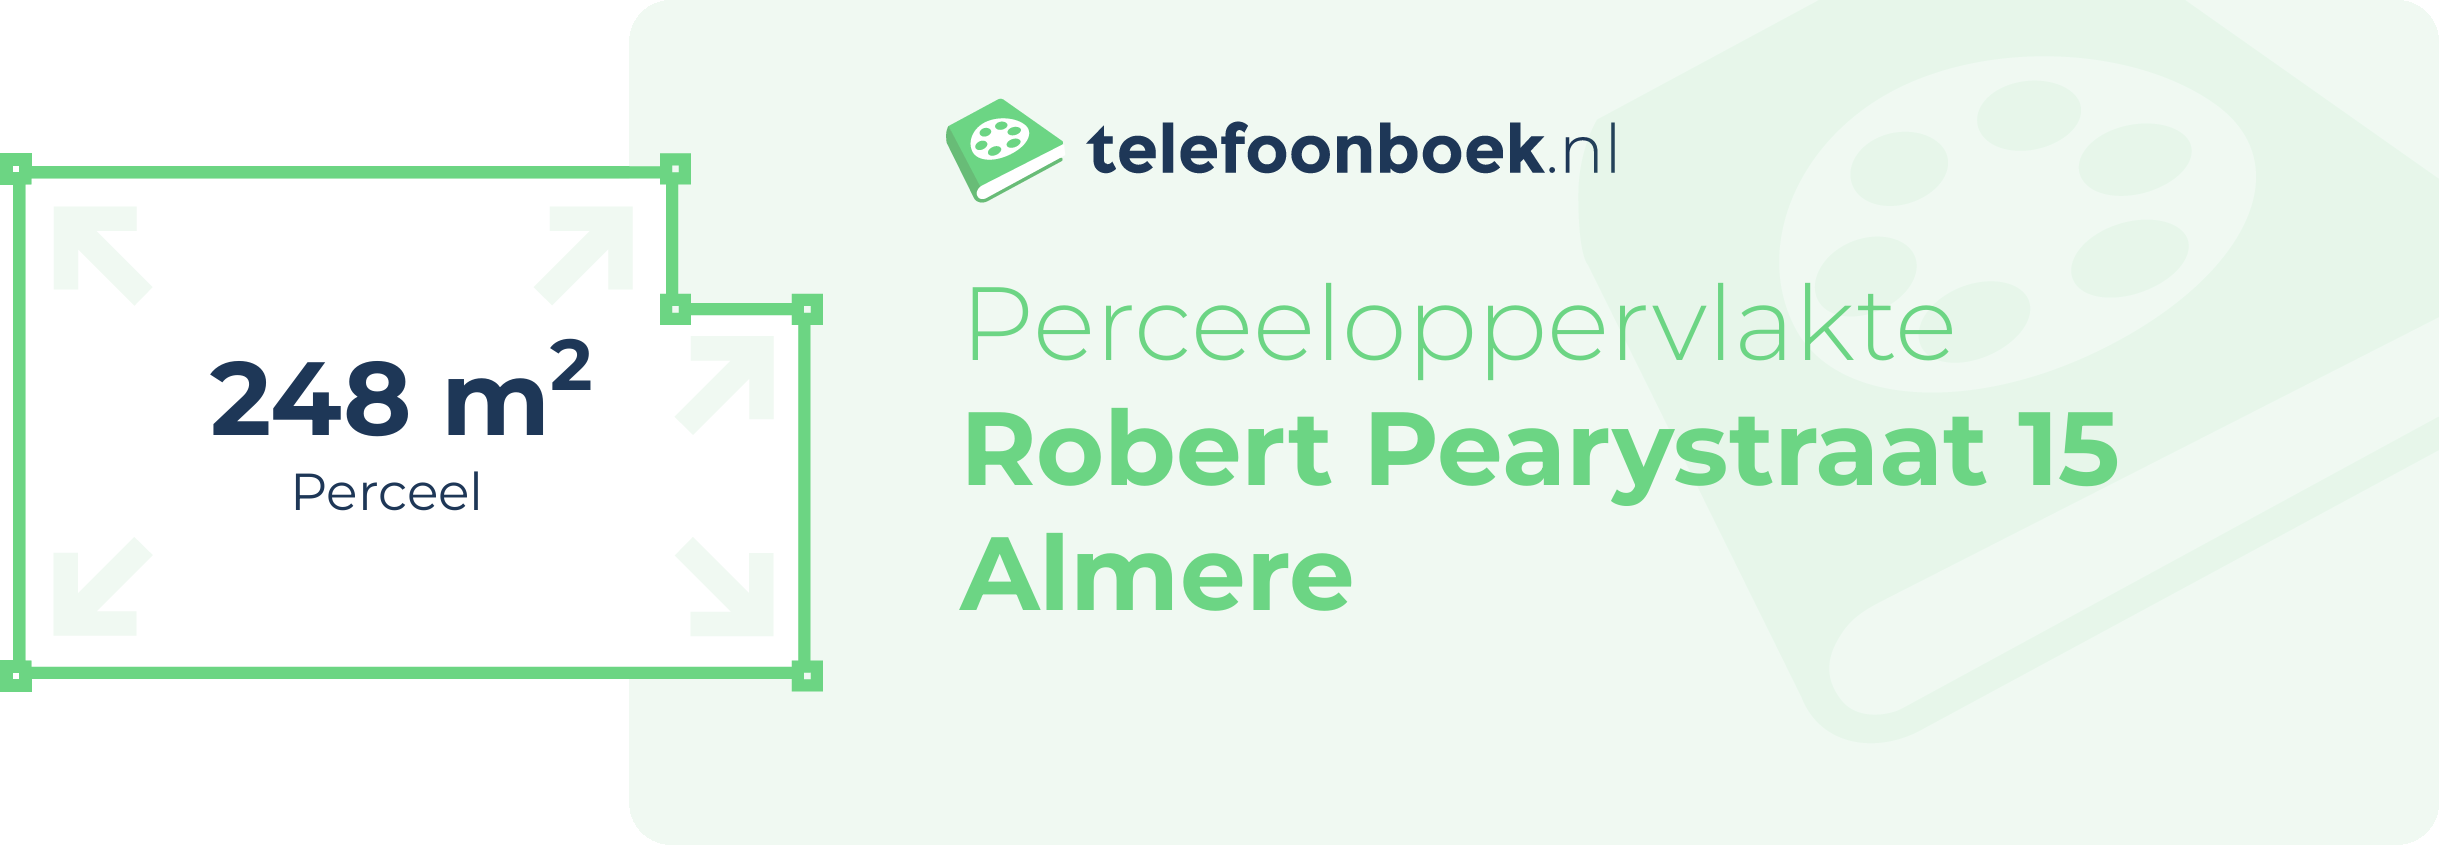 Perceeloppervlakte Robert Pearystraat 15 Almere